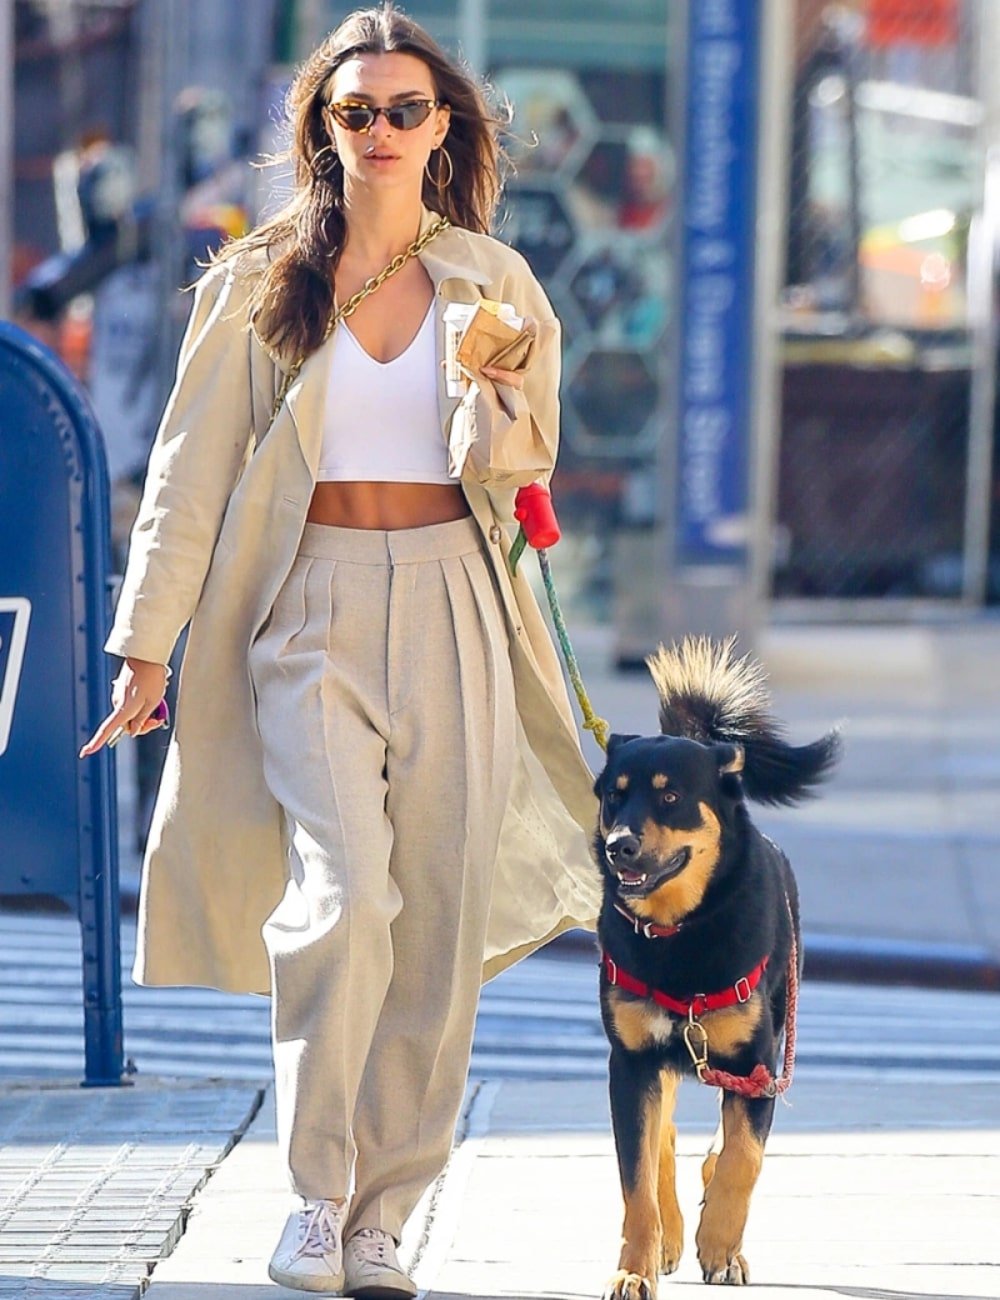 Emily Ratajkowski - calça loose, cropped branco, blazer e tênis - Emily Ratajkowski - Verão - andando na rua com um cachorro - https://stealthelook.com.br